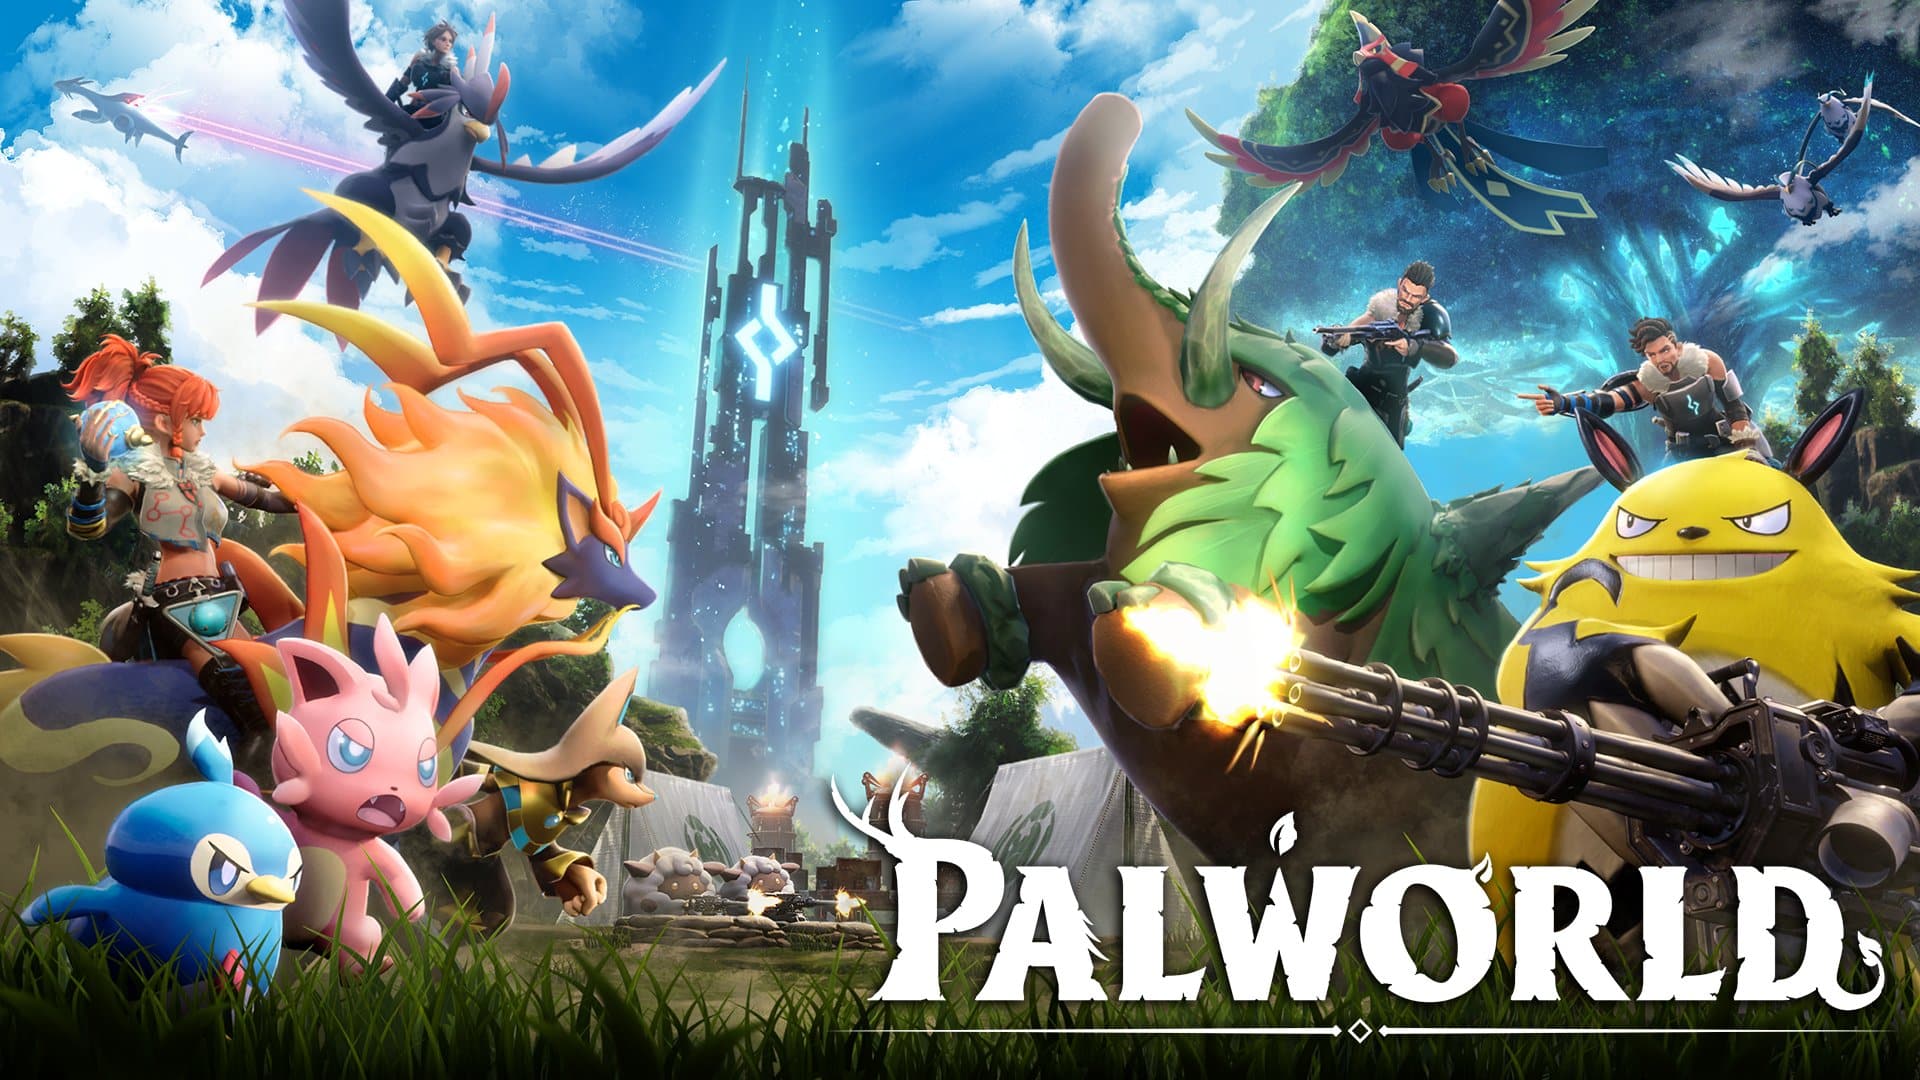 Palworld trailer screenshot